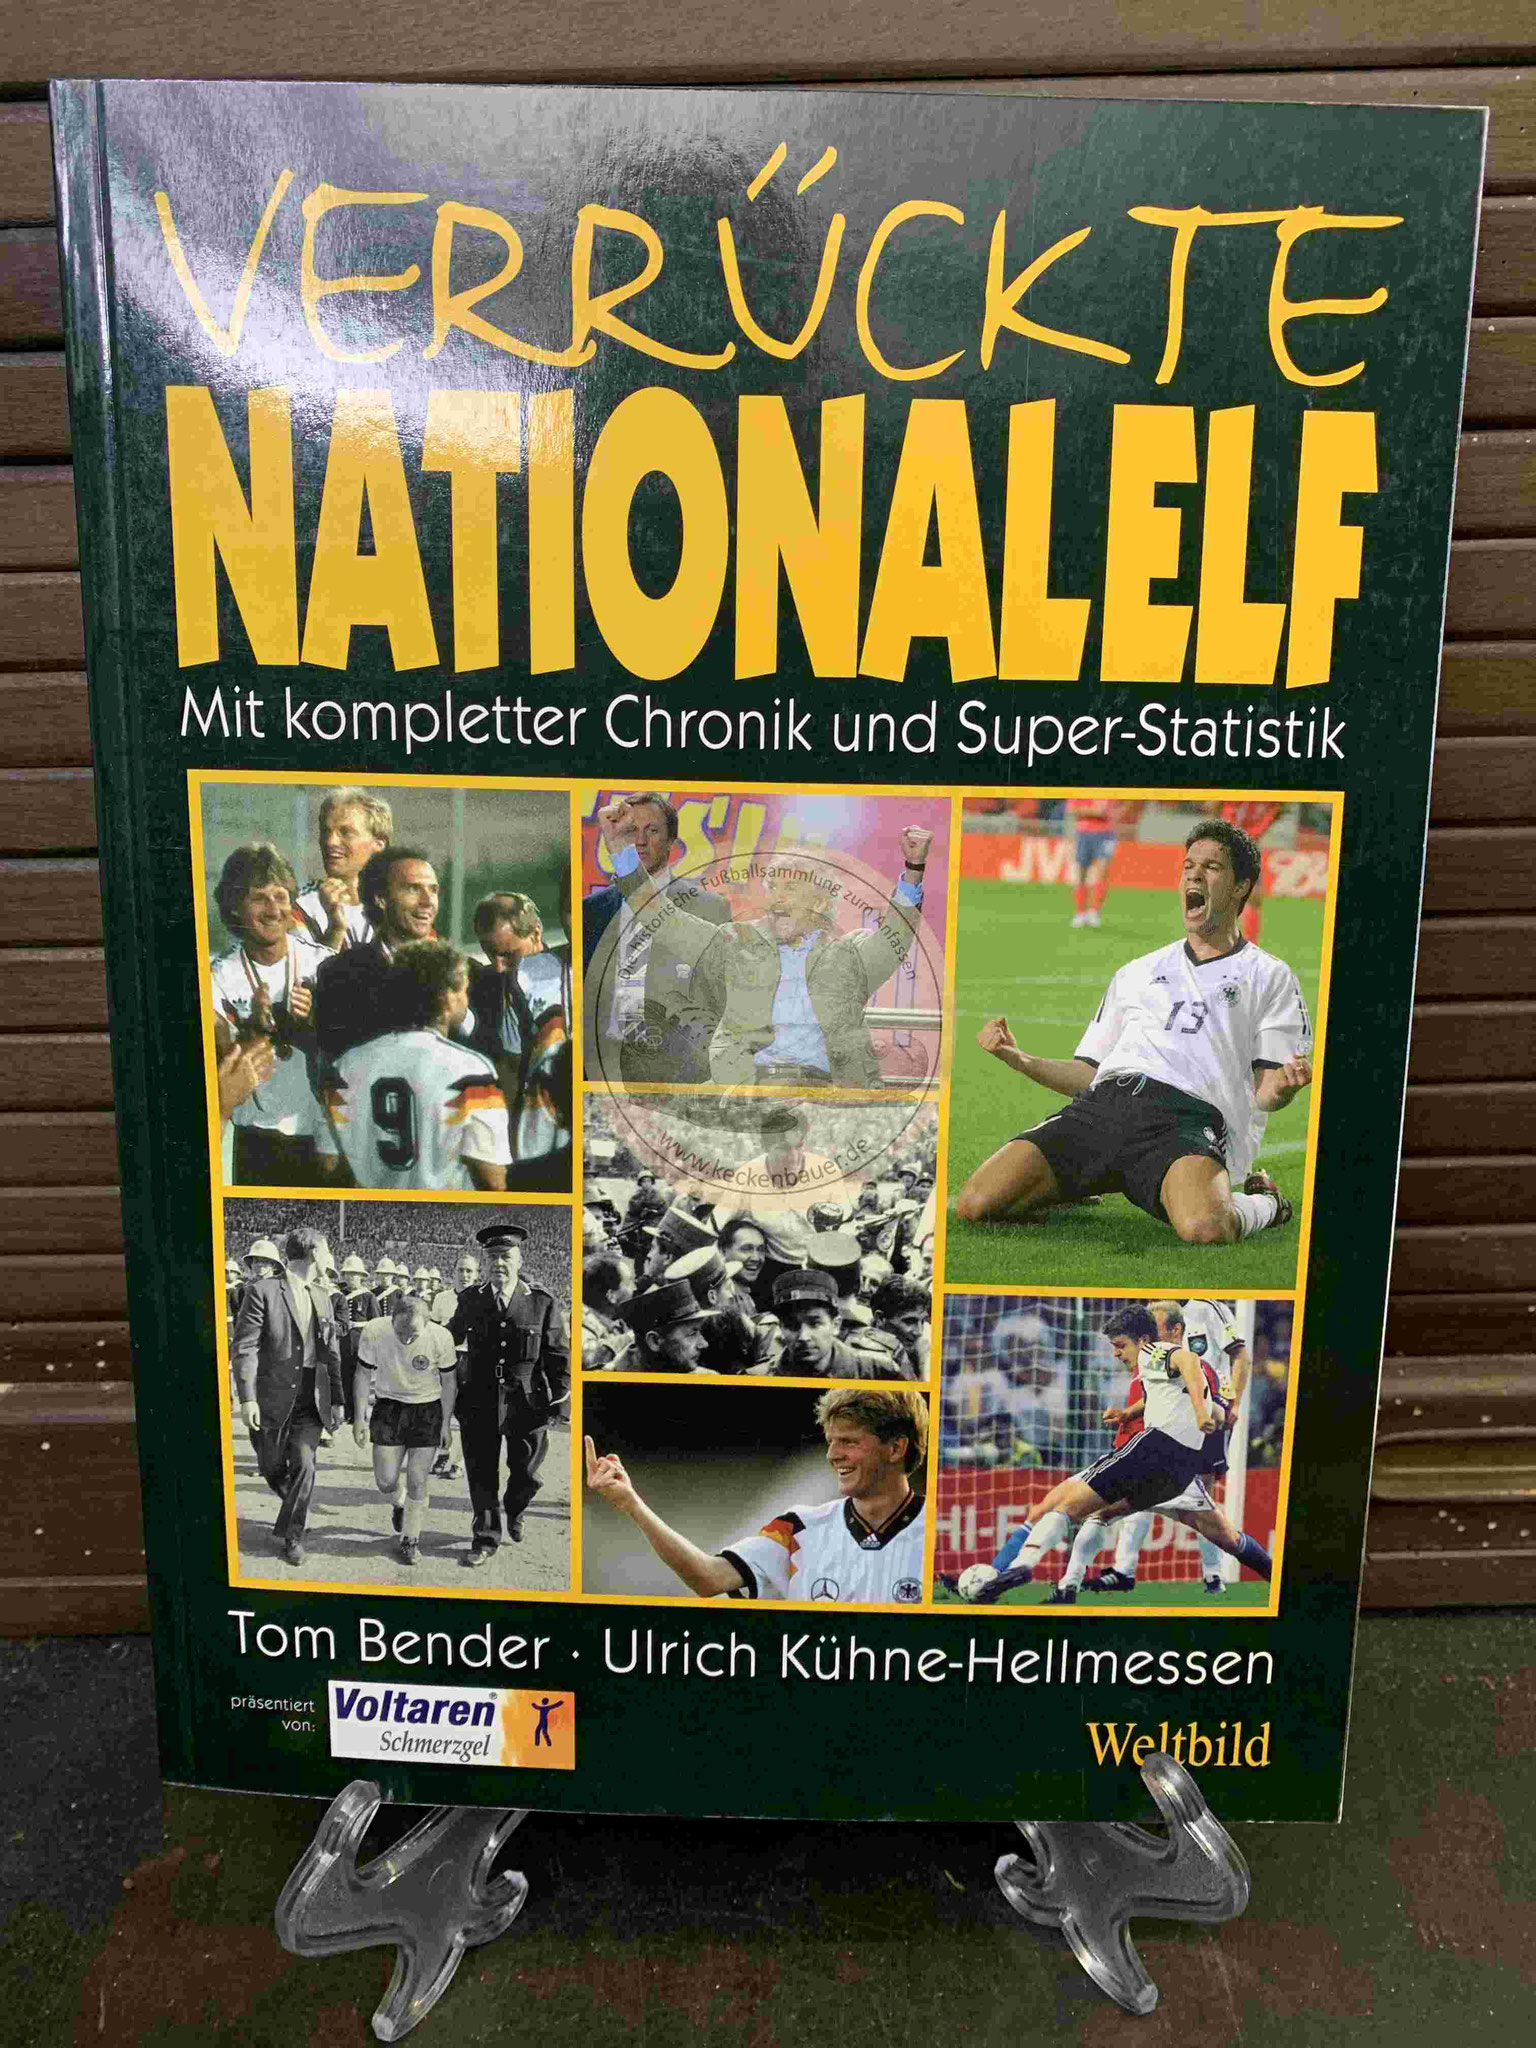 Verrückte Nationalelf mit kompletter Chronik und Super-Statistik von Tom Bender und Ulrich Kühne-Hellmessen im Weltbild Verlag aus dem Jahr 2003